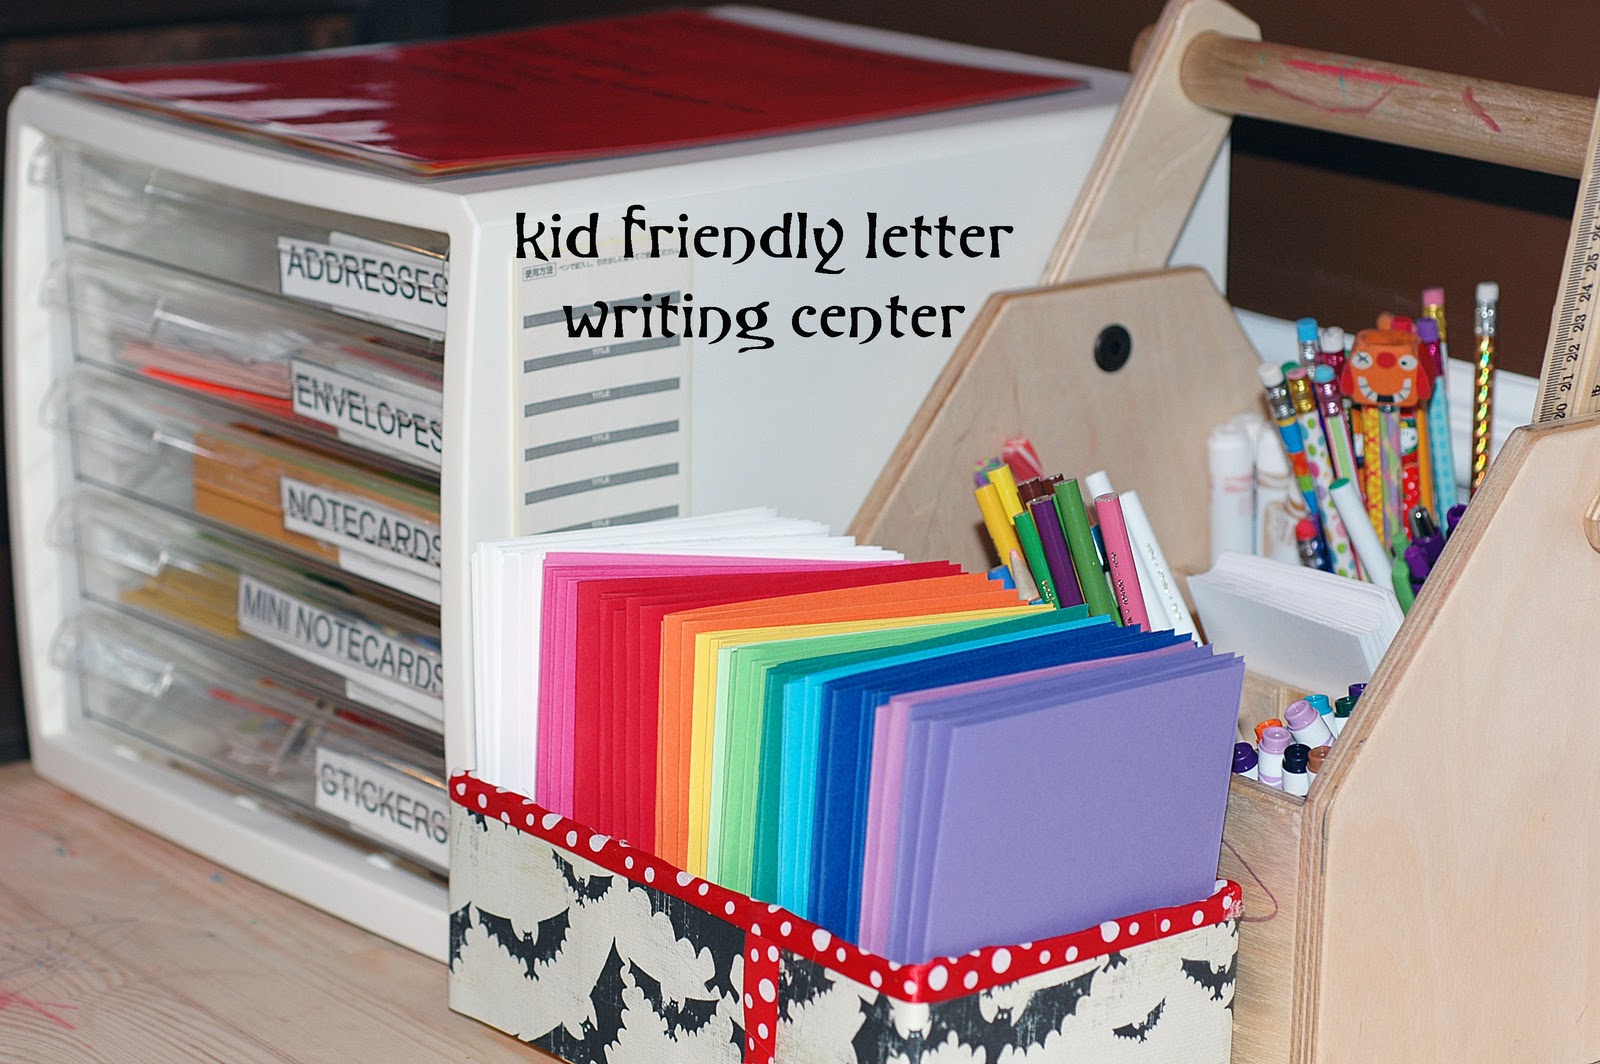 Blank Letter Template For Kids Friendly Letter